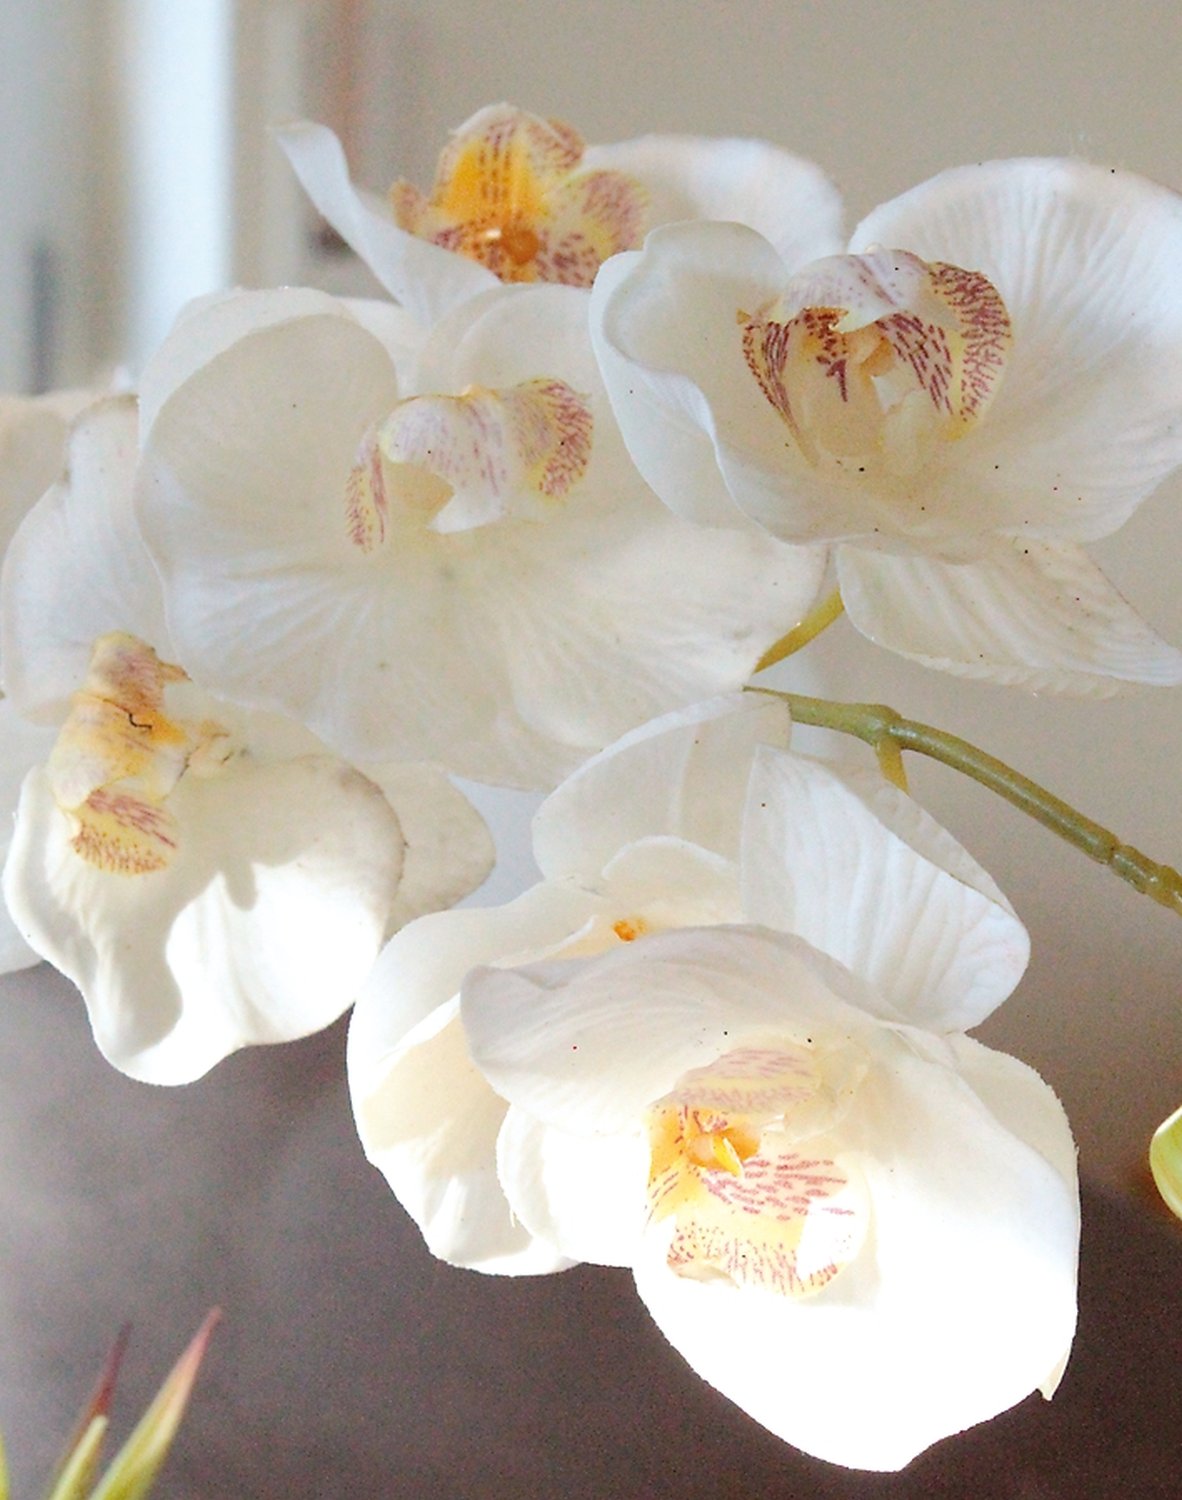 Orchidea Phalaenopsis artificiale in bottiglia di ceramica, 64 cm, bianco-crema